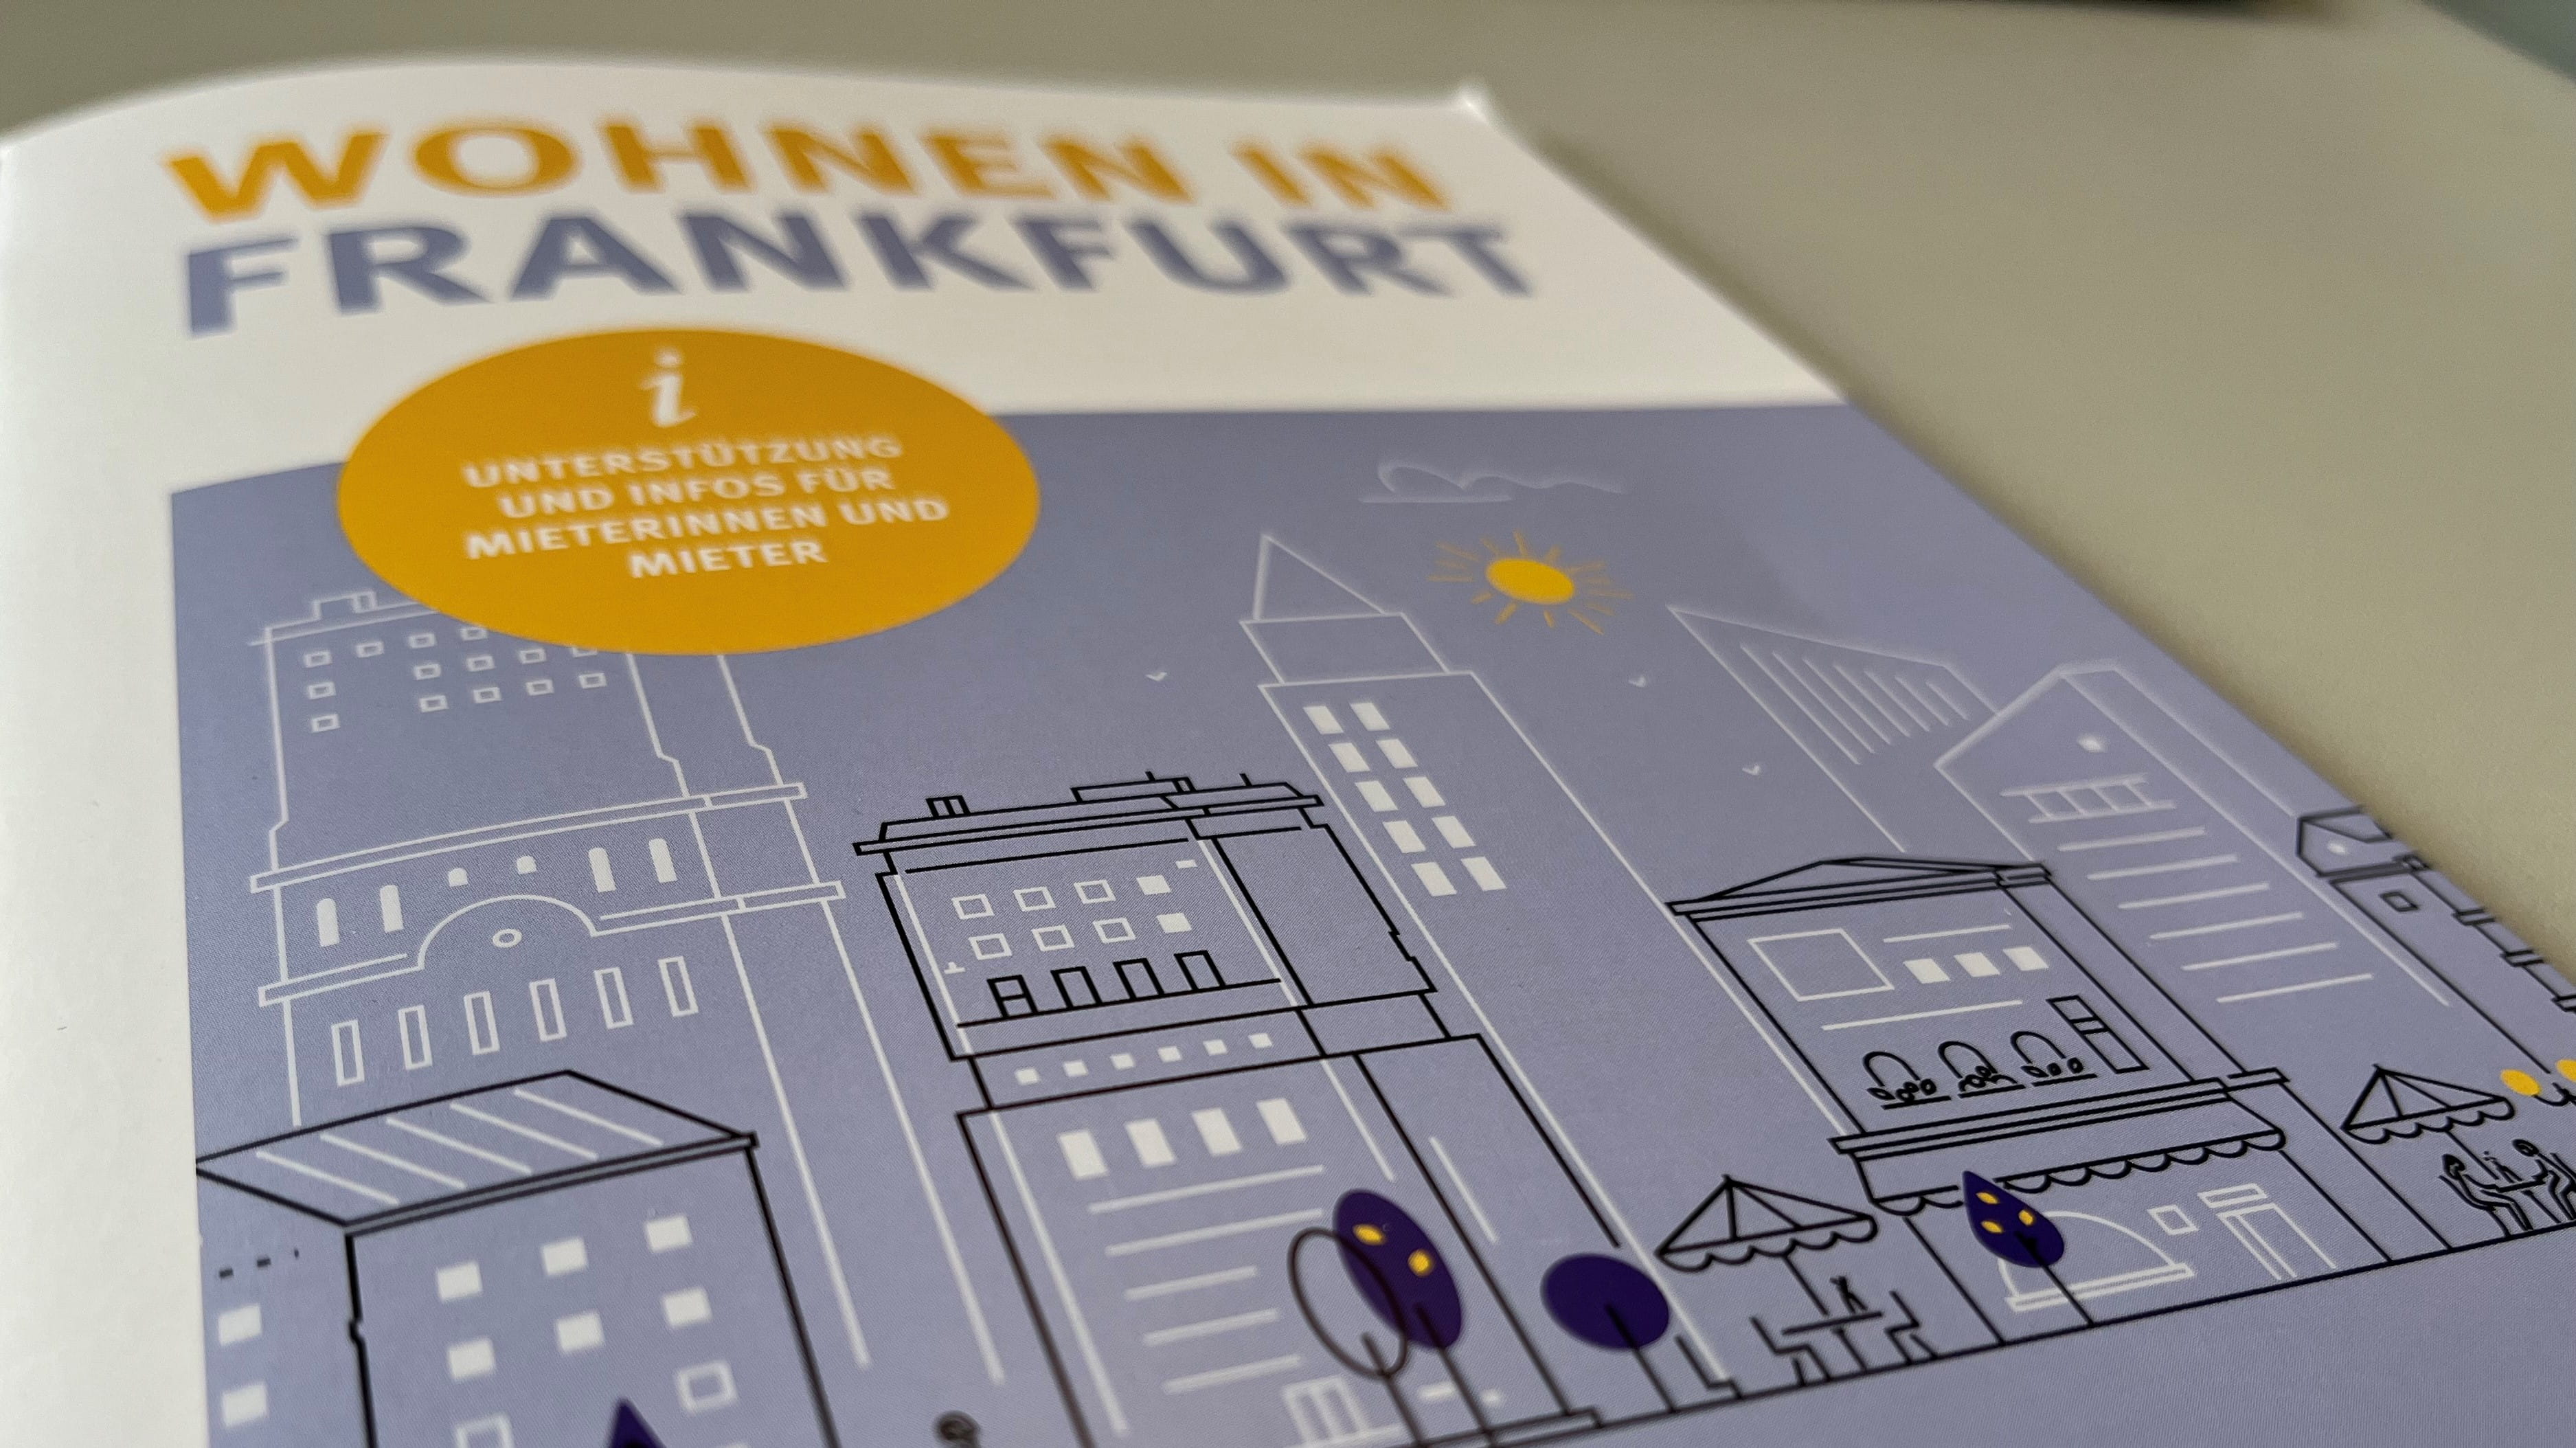 Das Bild zeigt das Cover der Broschüre Wohnen in Frankfurt mit stilisierter Stadtlandschaft.